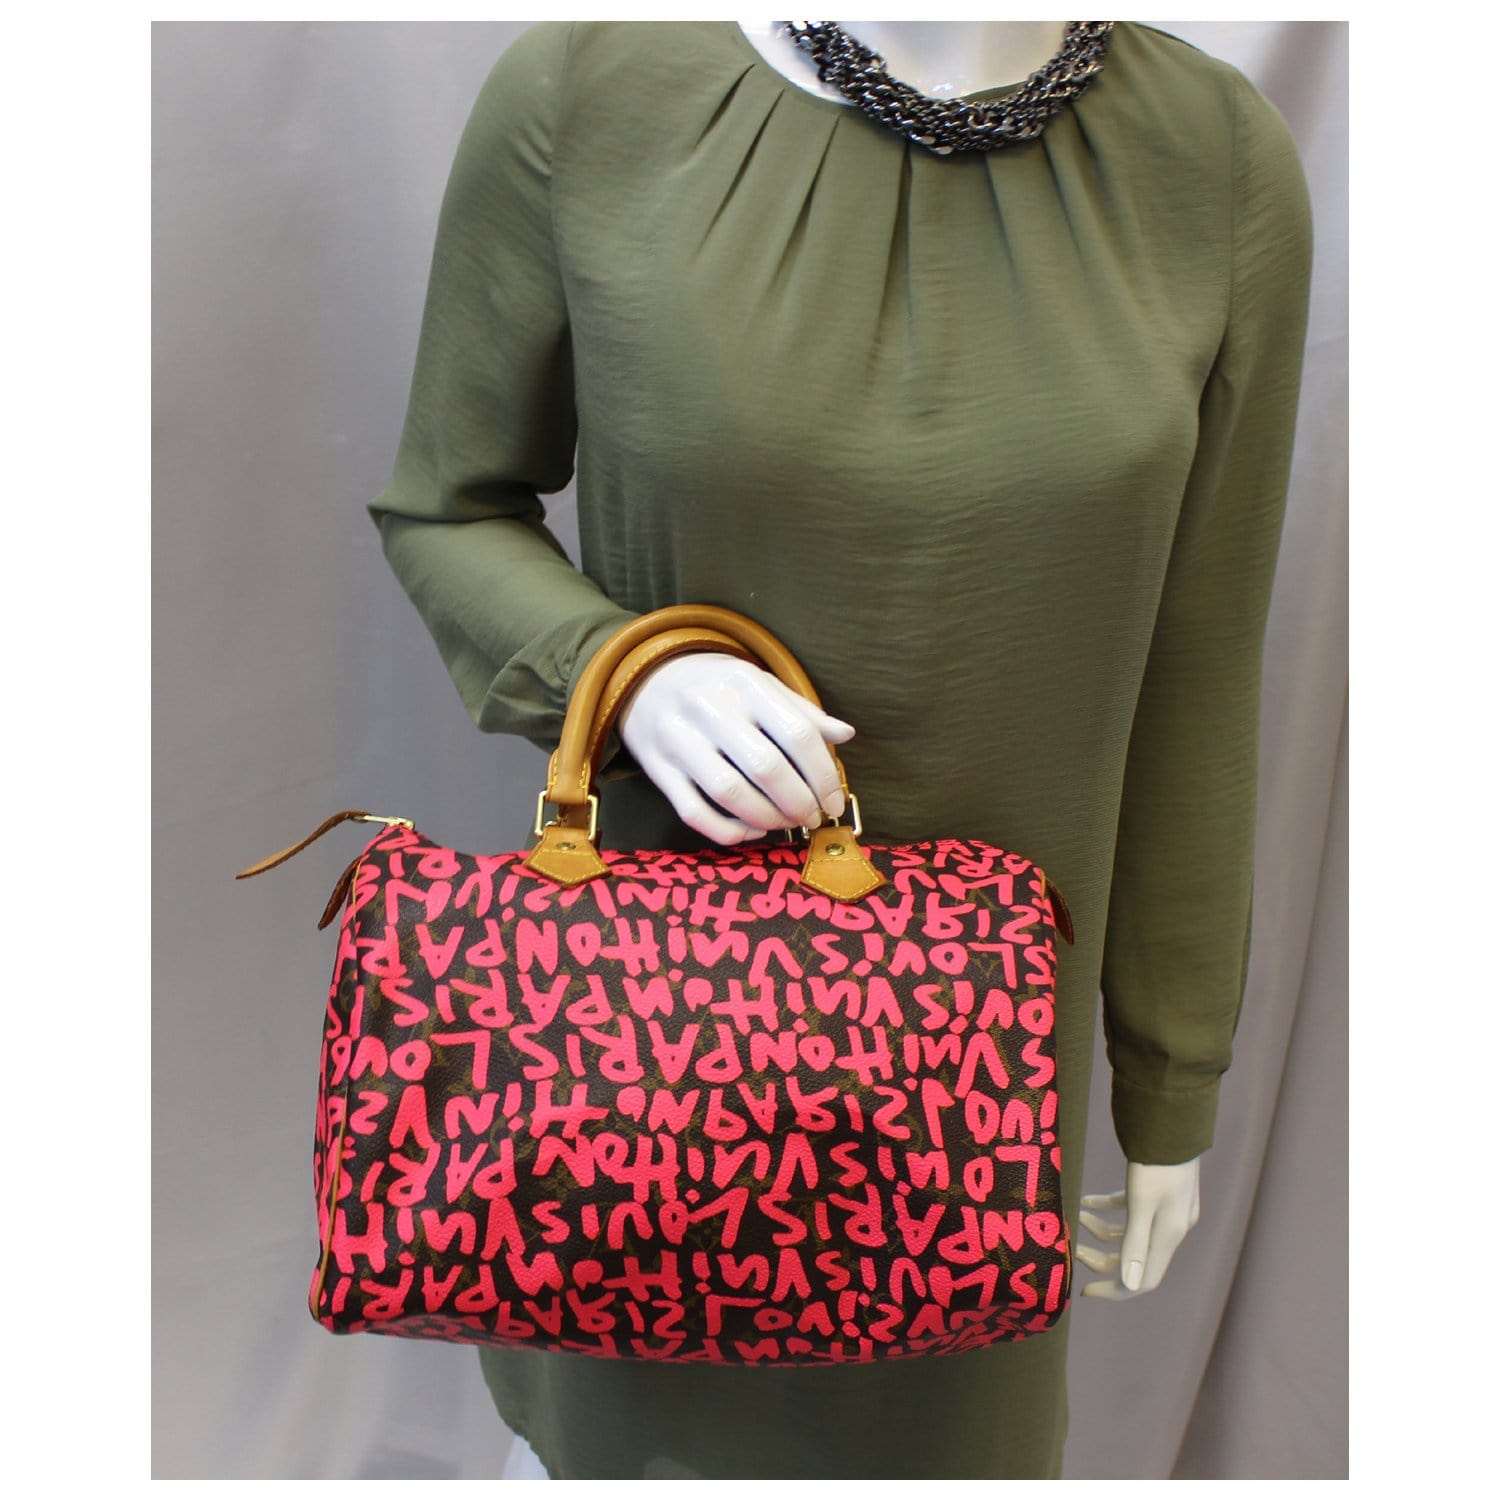 Hot pink VOYD handbag  Handbag, Louis vuitton speedy bag, Hot pink